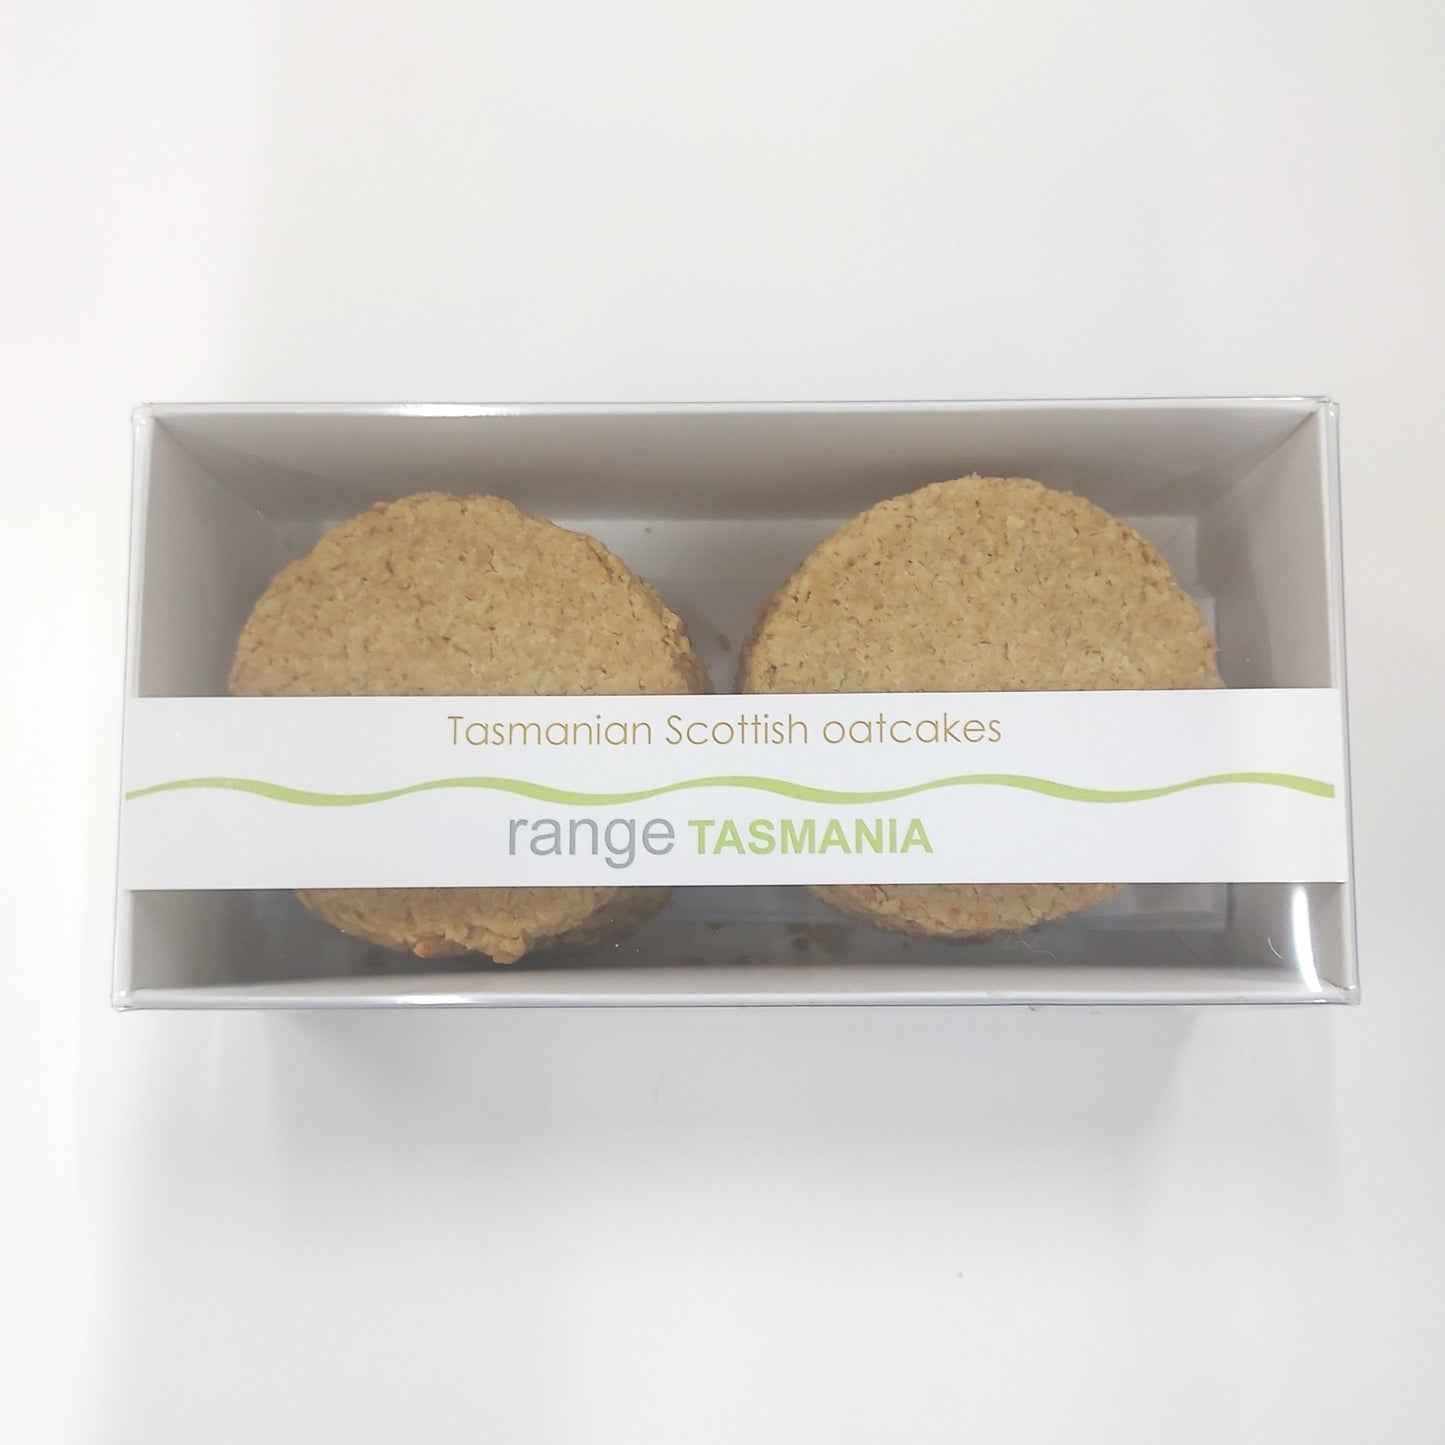 a large packet of range tasmania Tasmanian Scottish oatcakes